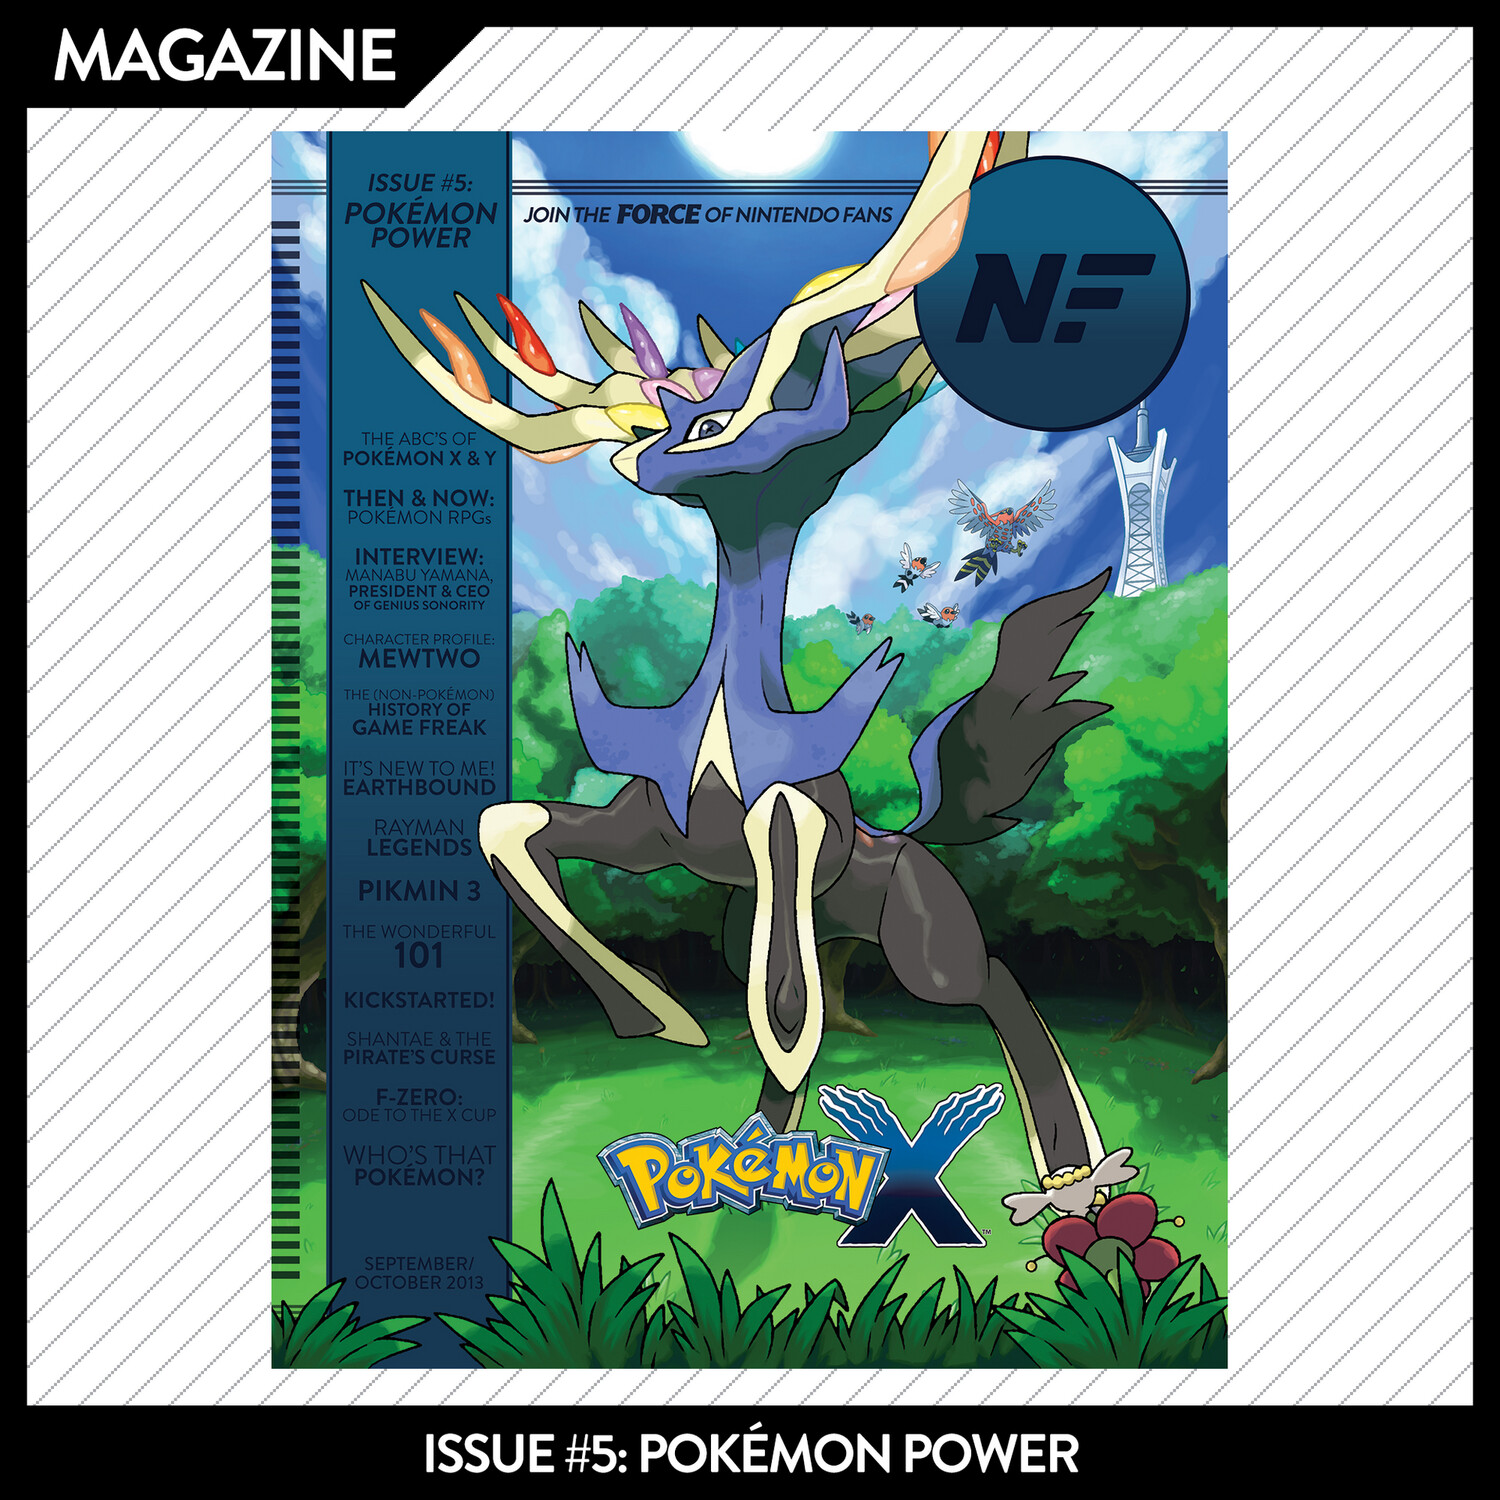 Issue #5: Pokémon Power – September/October 2013